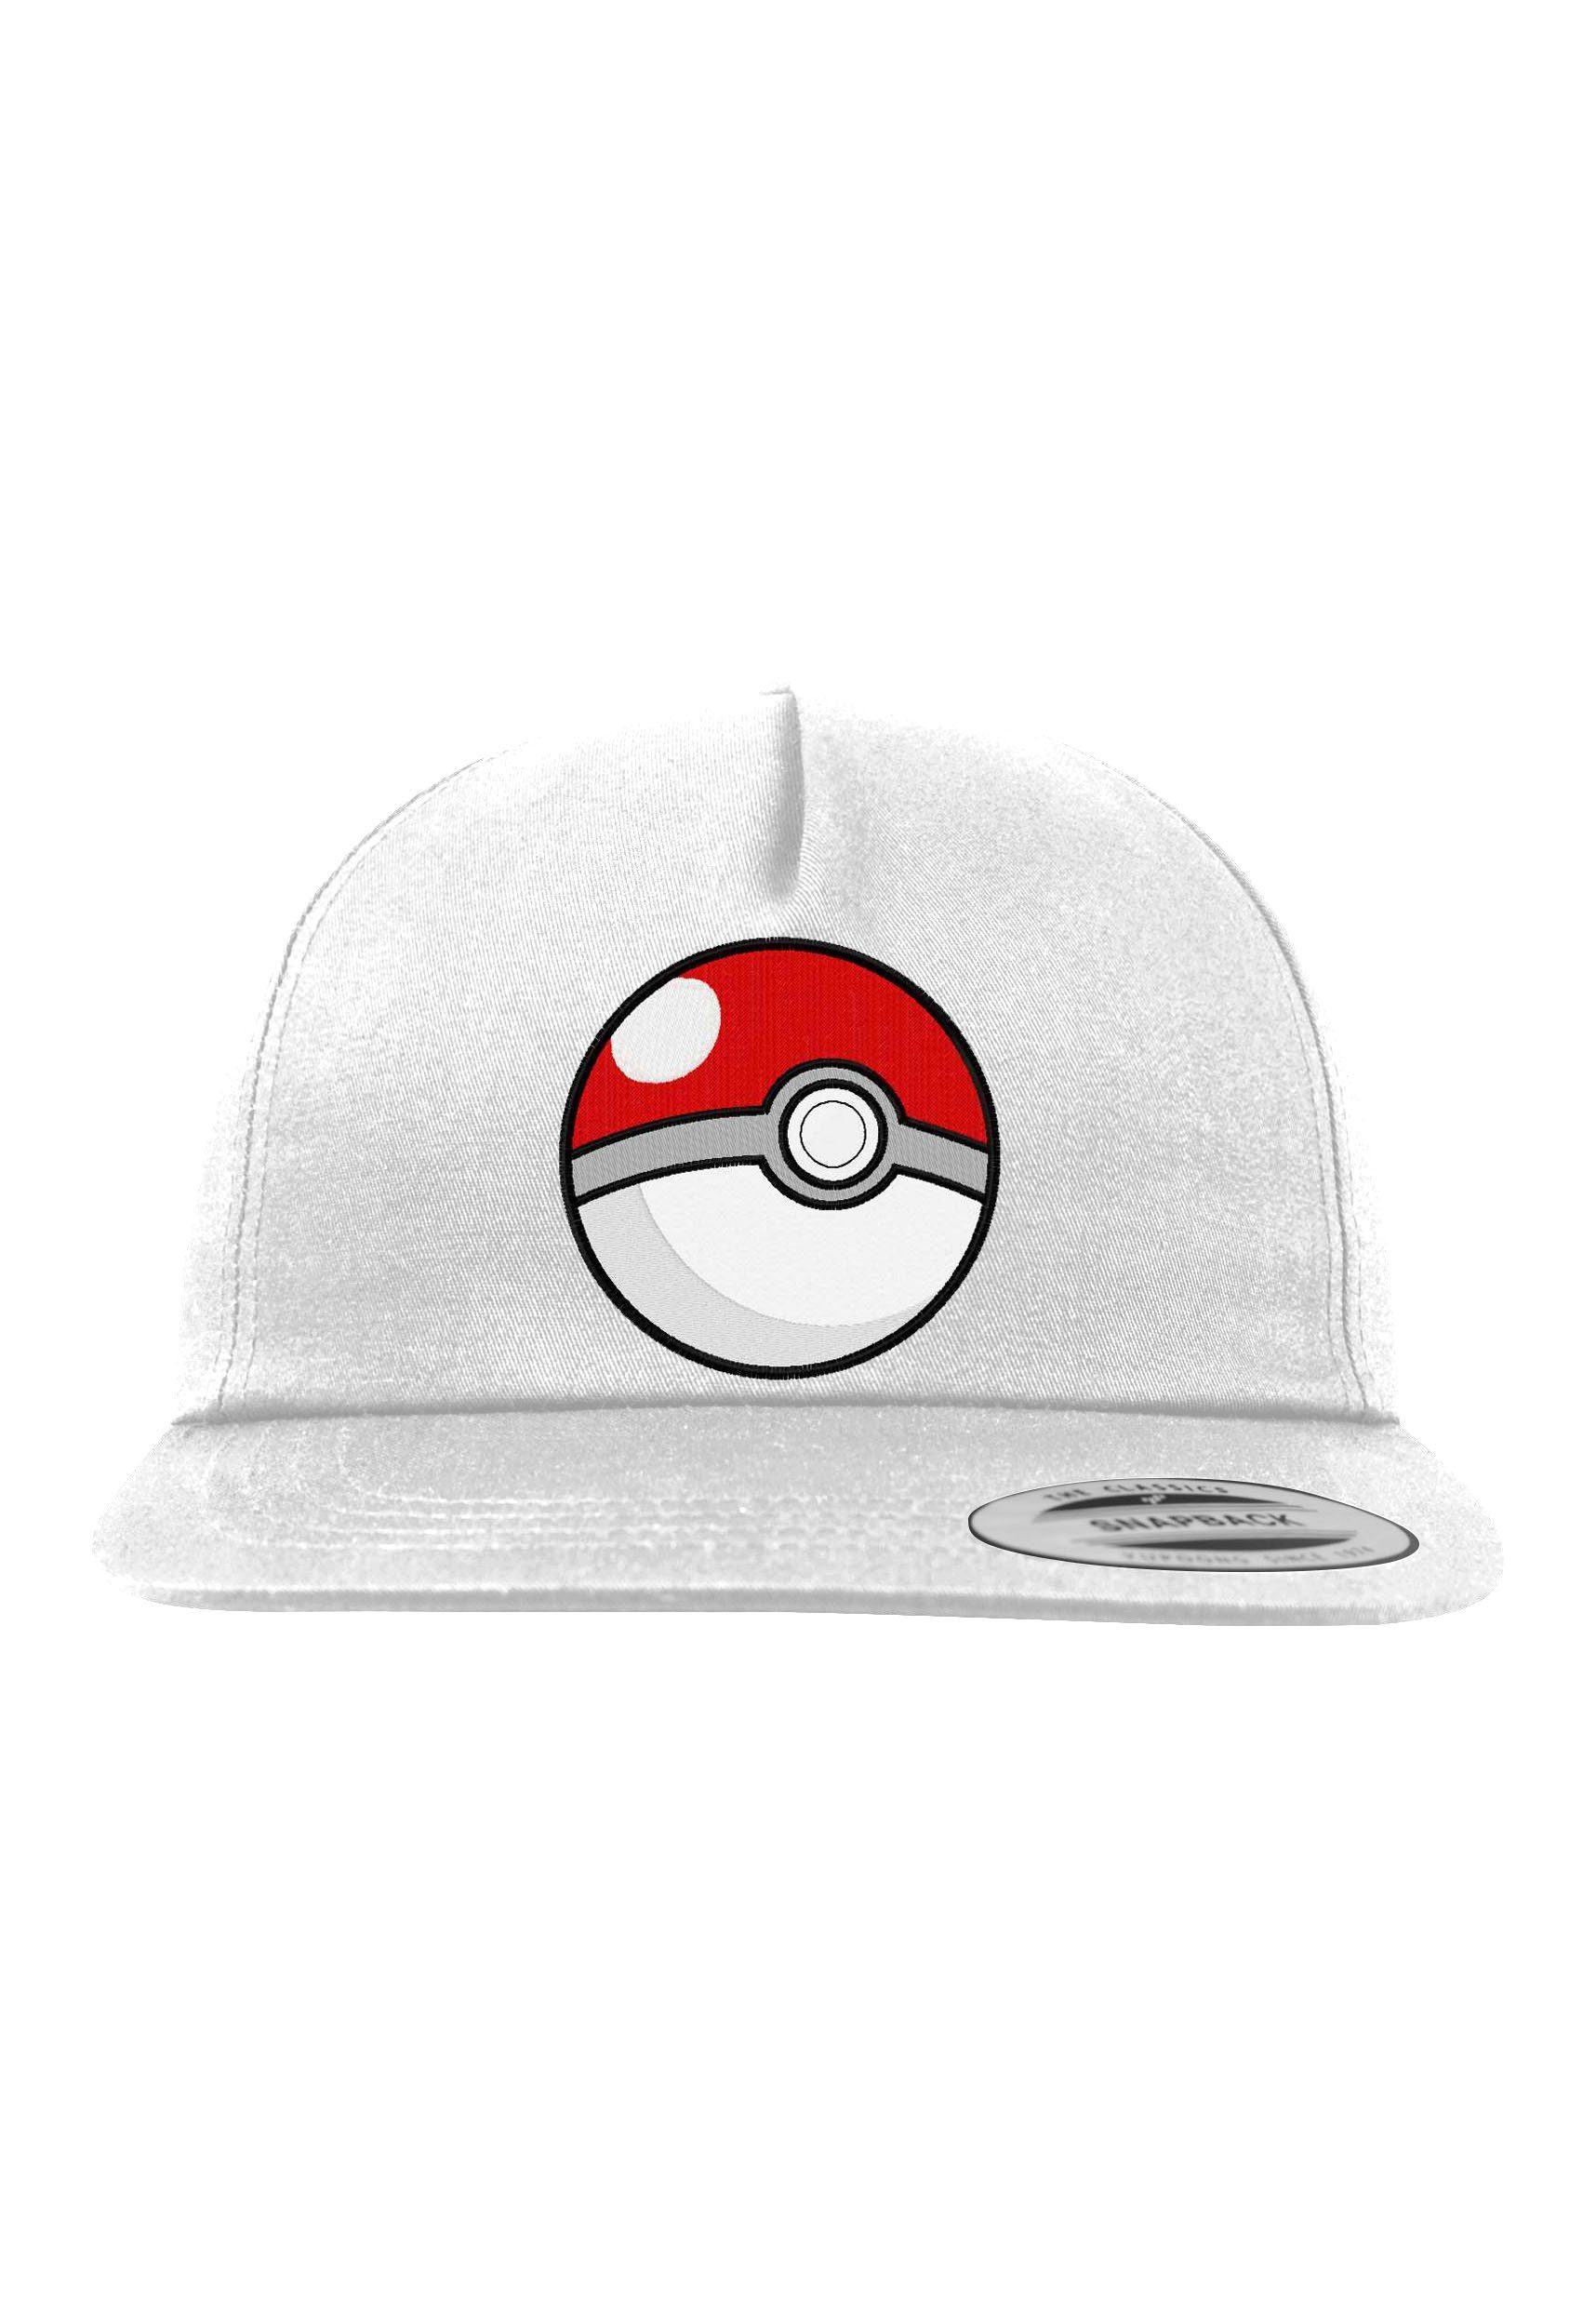 Youth Designz Baseball Cap Poke mit Ball Logo Stickerei Weiß Unisex Snapback Cap modischer